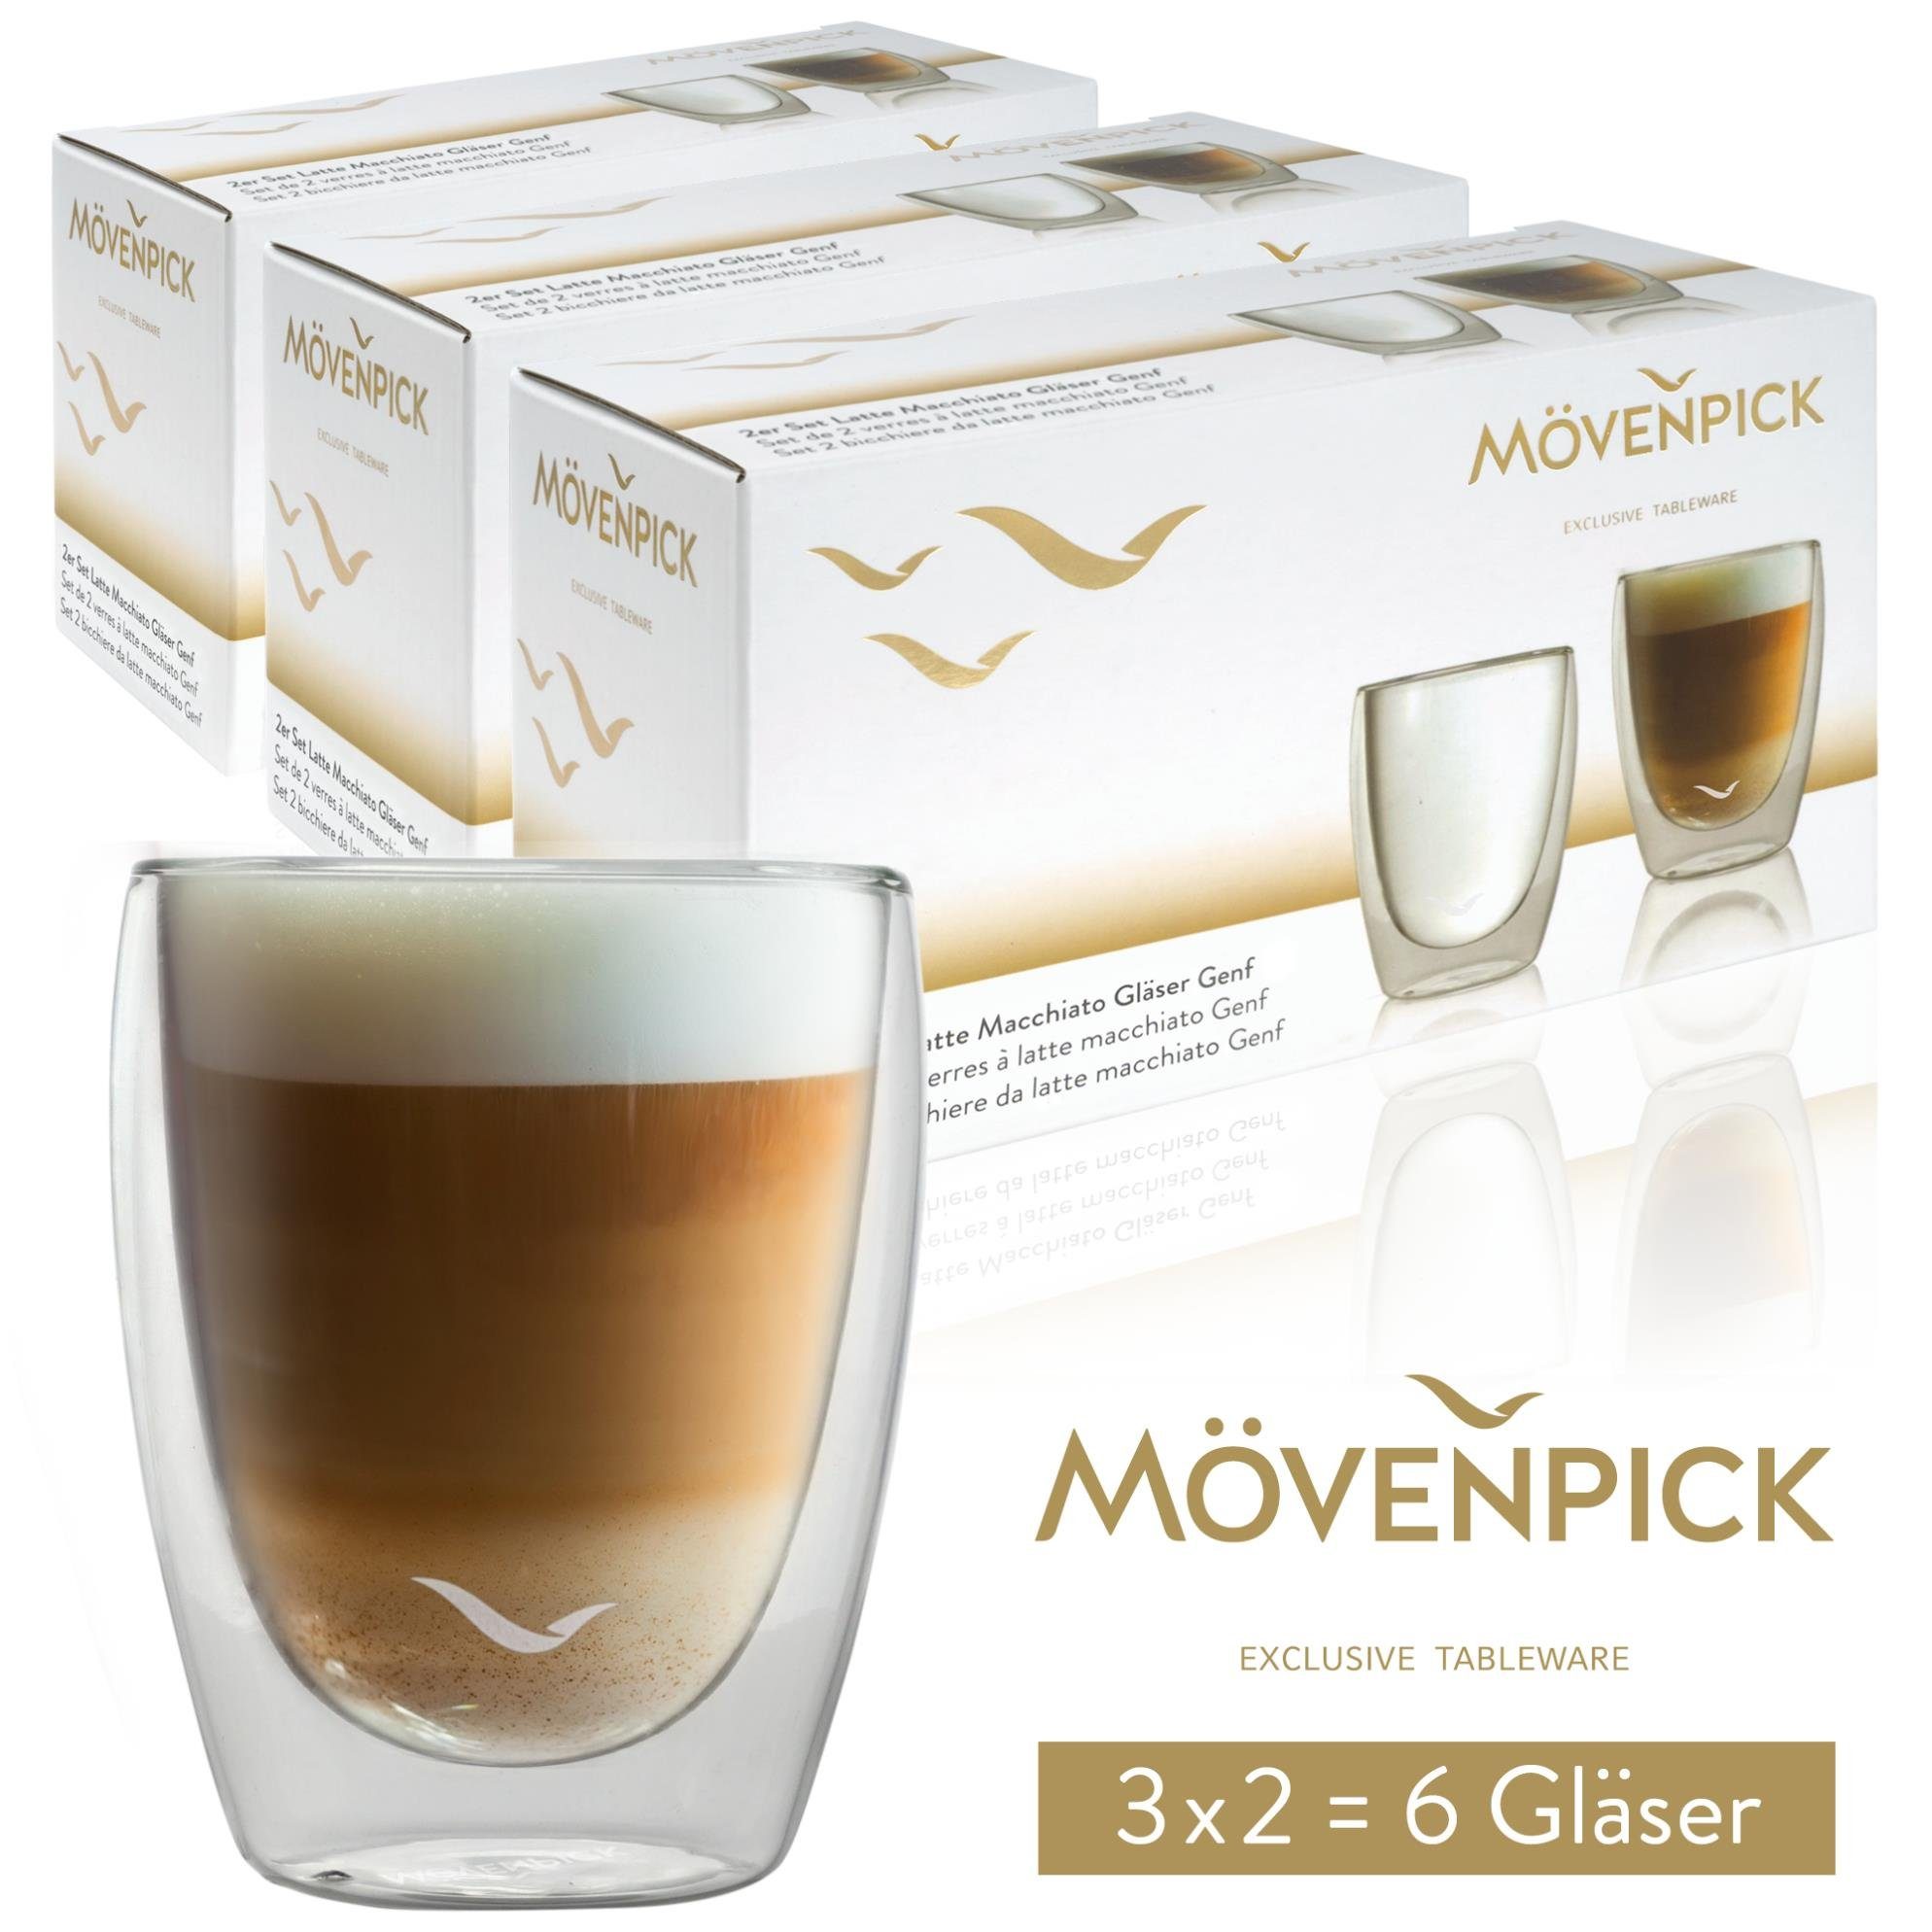 Mövenpick Gläser-Set 6 x Latte Macchiato Gläser, Borosilikat, 300 ml - Spülmaschinengeeignete doppelwandige Gläser - Thermogläser geeignet als Teegläser und Kaffeegläser